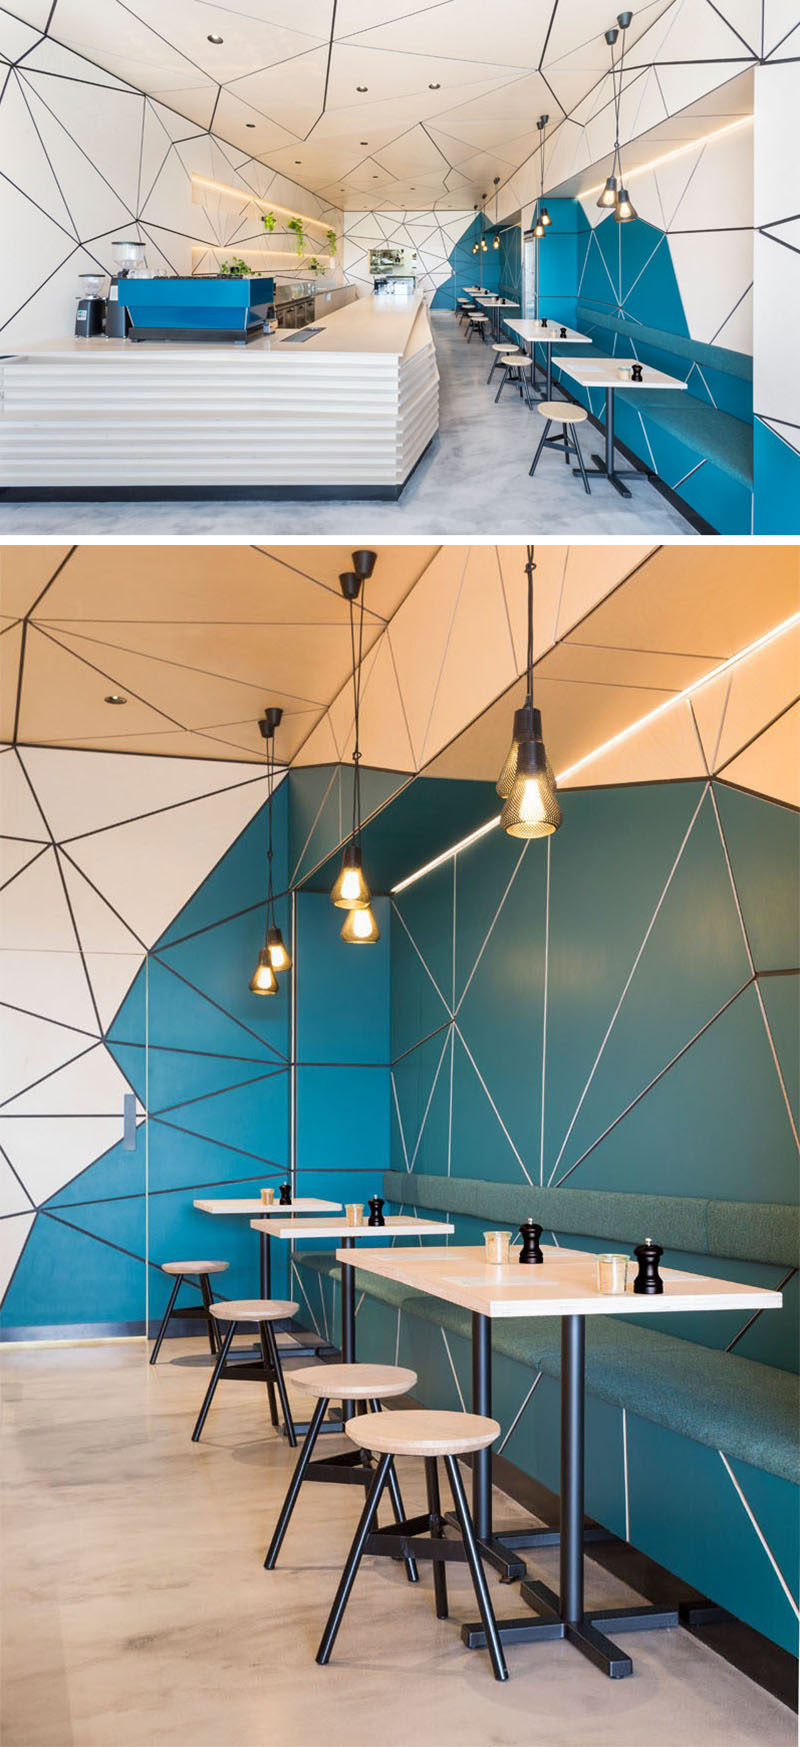 Эта современная кофейня украшена деревянными панелями и расписными геометрическими панелями по всем стенам и потолку.